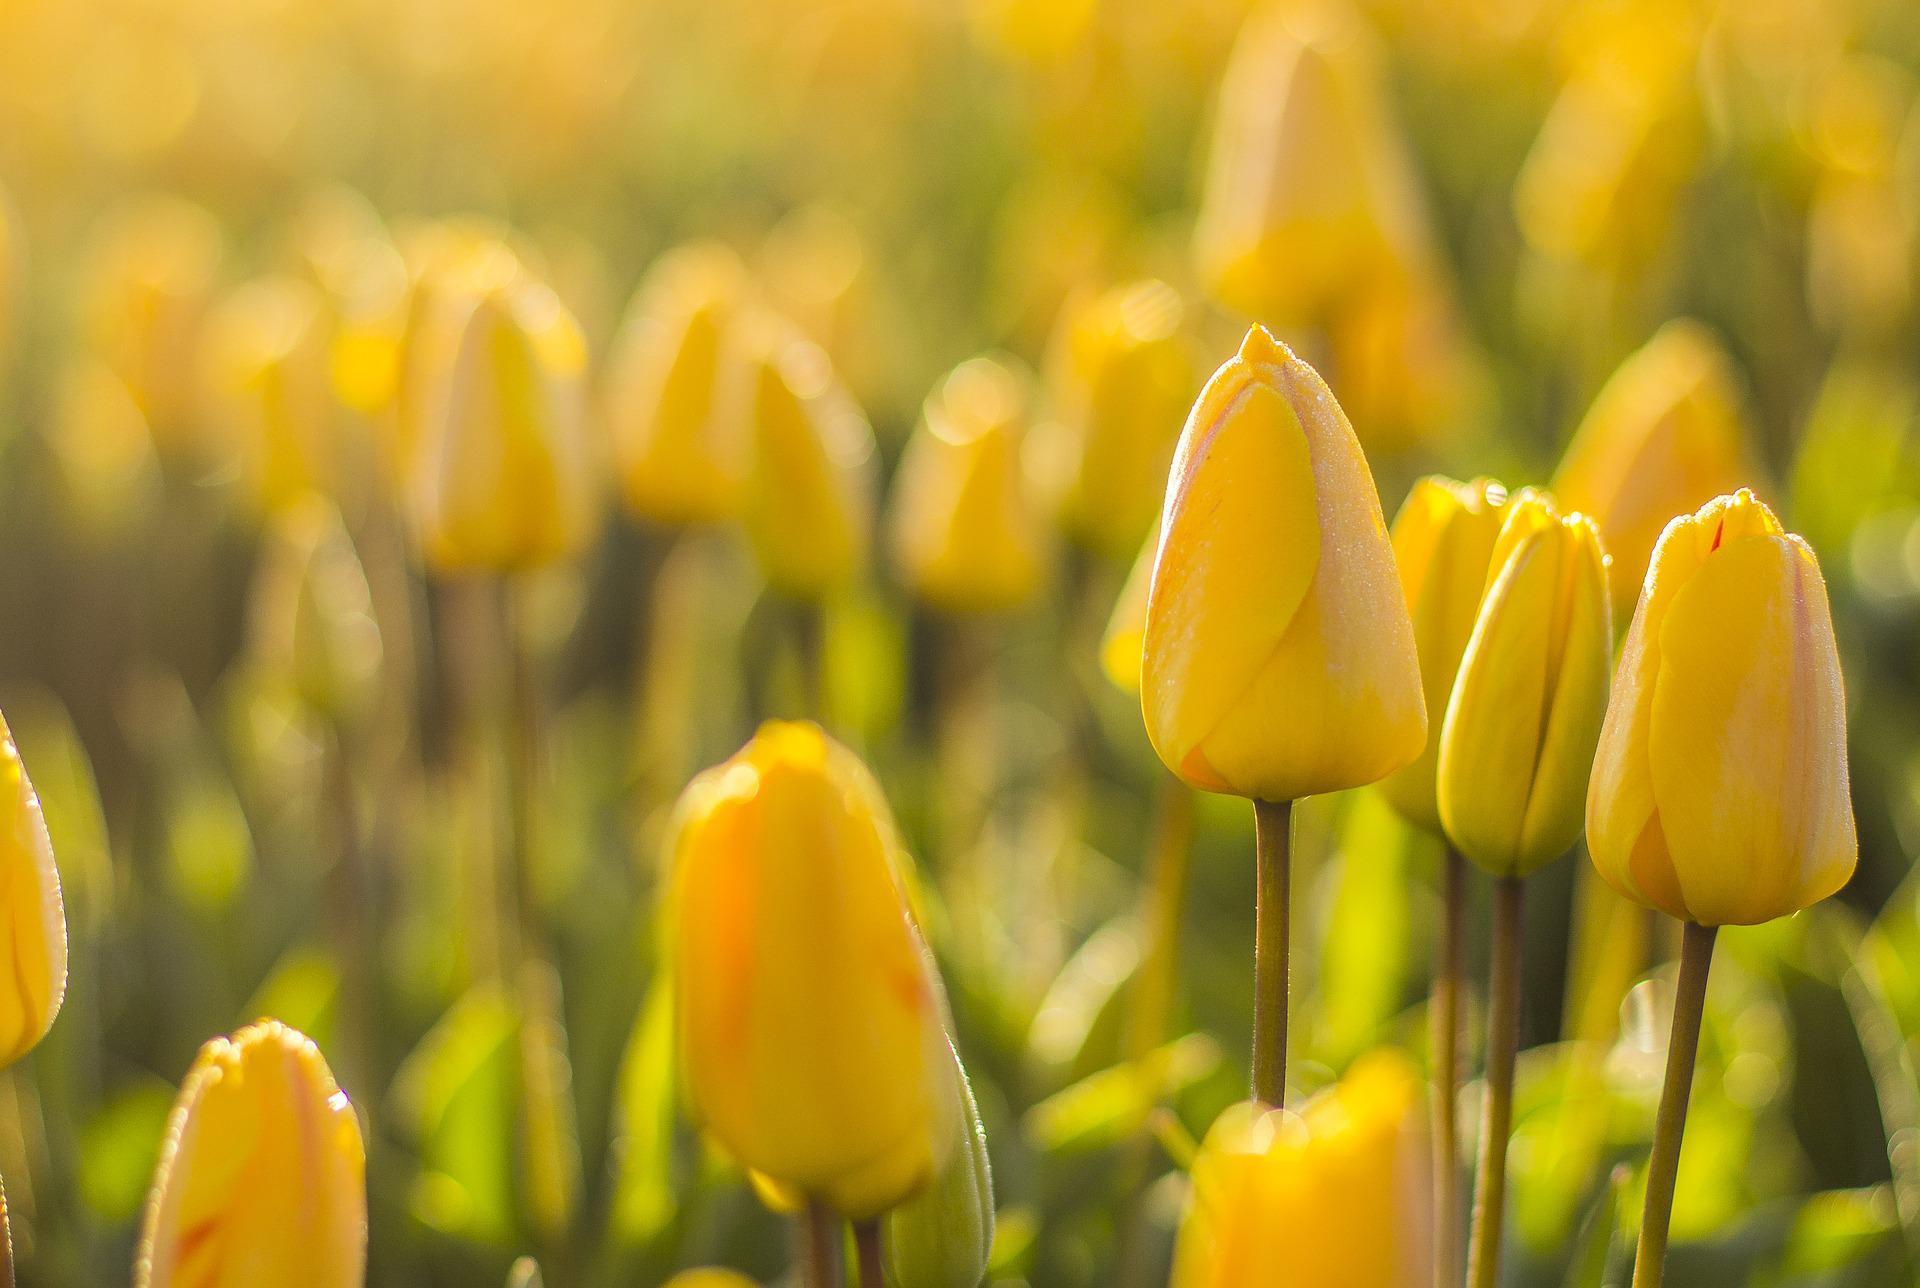 Hình nền hoa tulip vàng là điểm nhấn tuyệt vời cho màn hình điện thoại của bạn. Với màu sắc tươi sáng và rực rỡ, hình nền này sẽ mang lại cho bạn cảm giác vui tươi và thăng hoa mỗi khi mở màn hình điện thoại. Không chỉ là một hình ảnh đẹp, hình nền hoa tulip vàng còn là món quà tuyệt vời cho bạn bè và người thân.